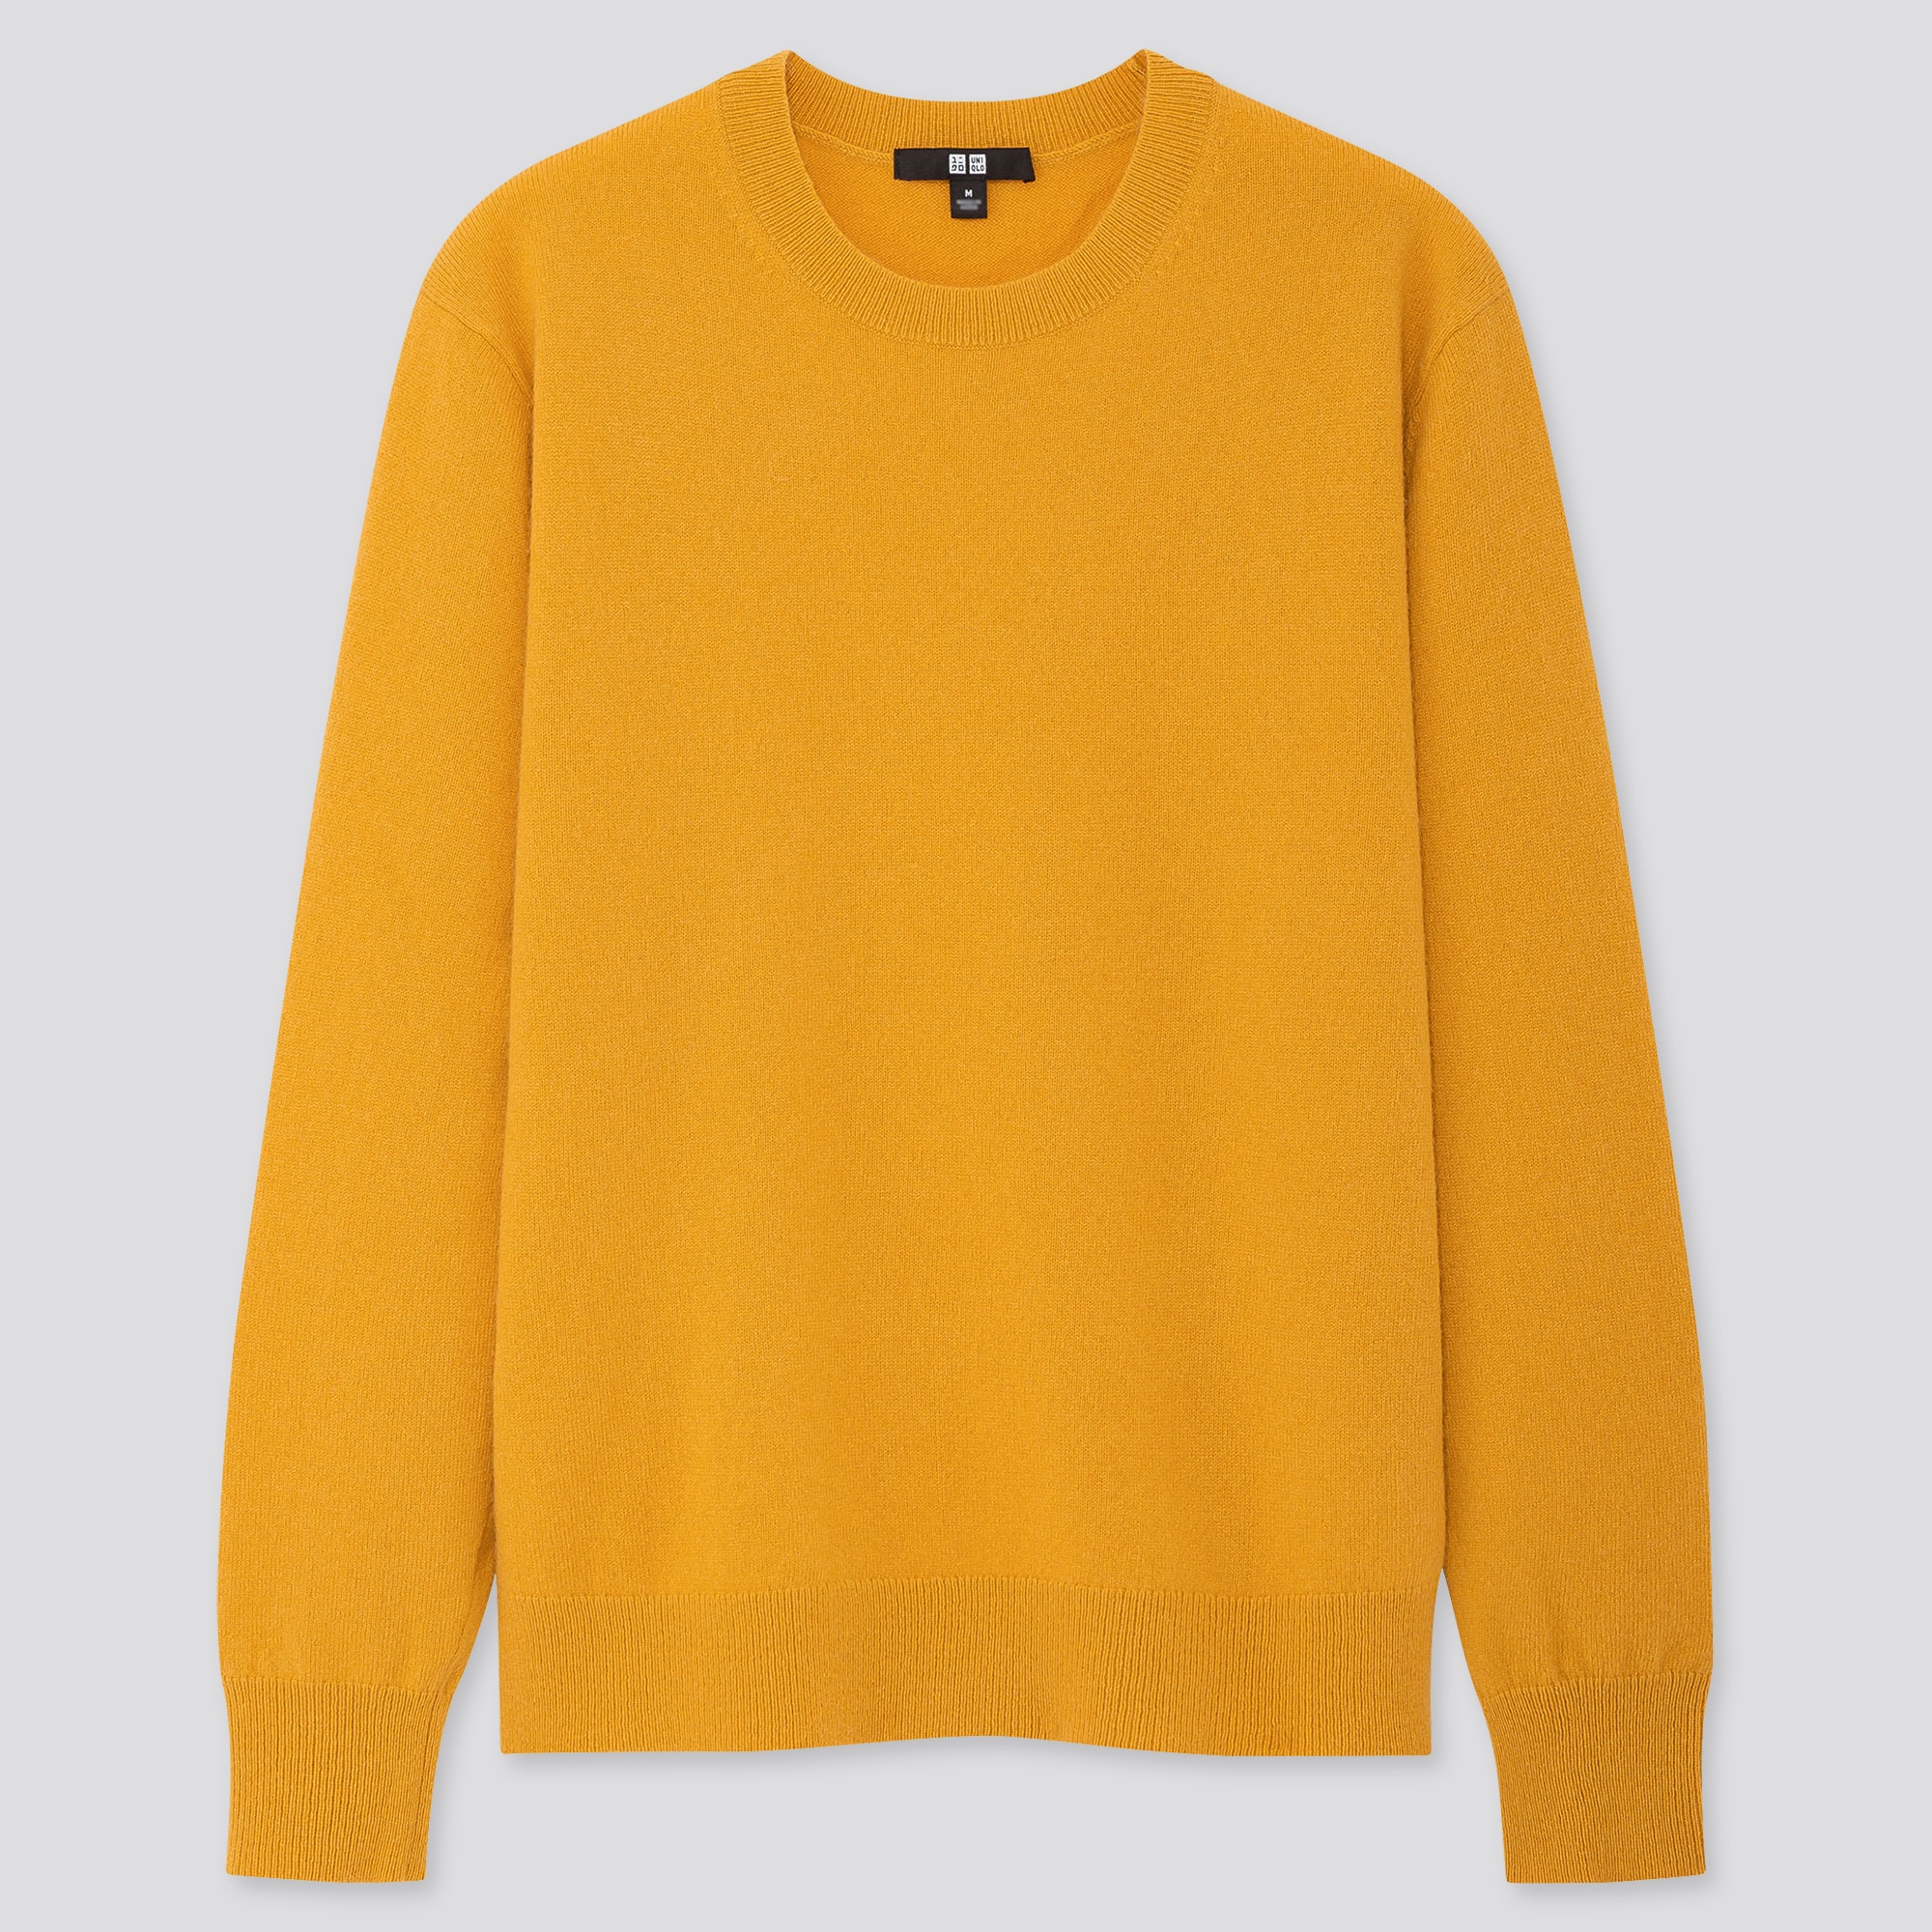 yellow crew neck sweater